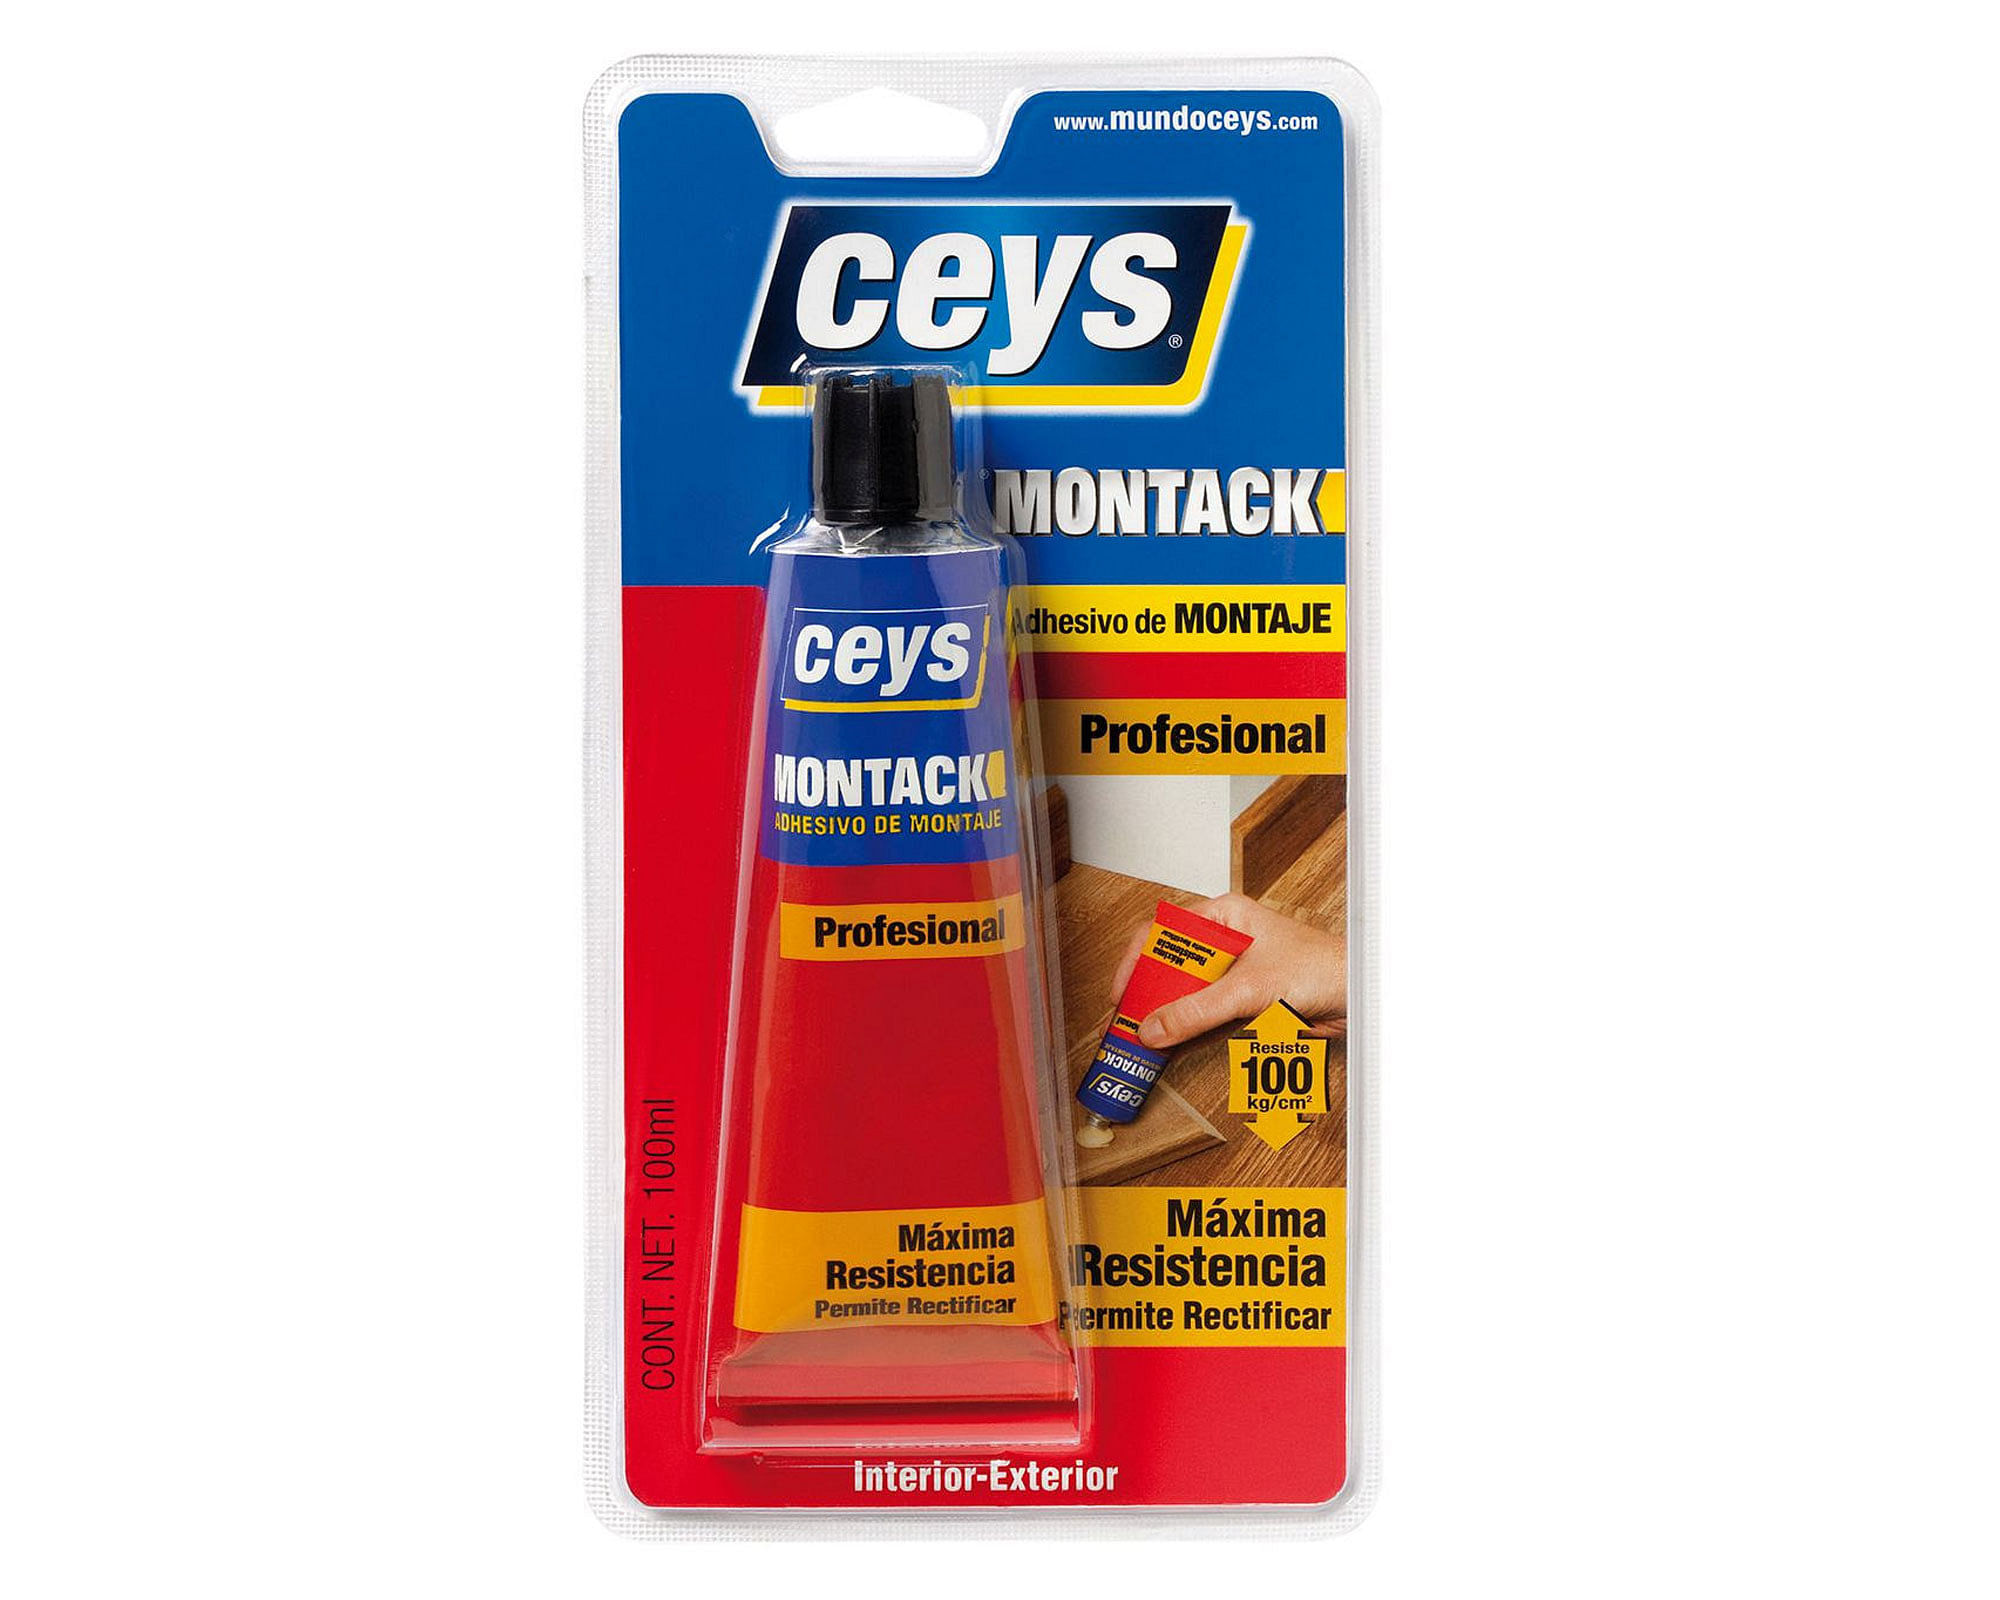 Adhesivo de montaje 100 ml Montack profesional Ceys